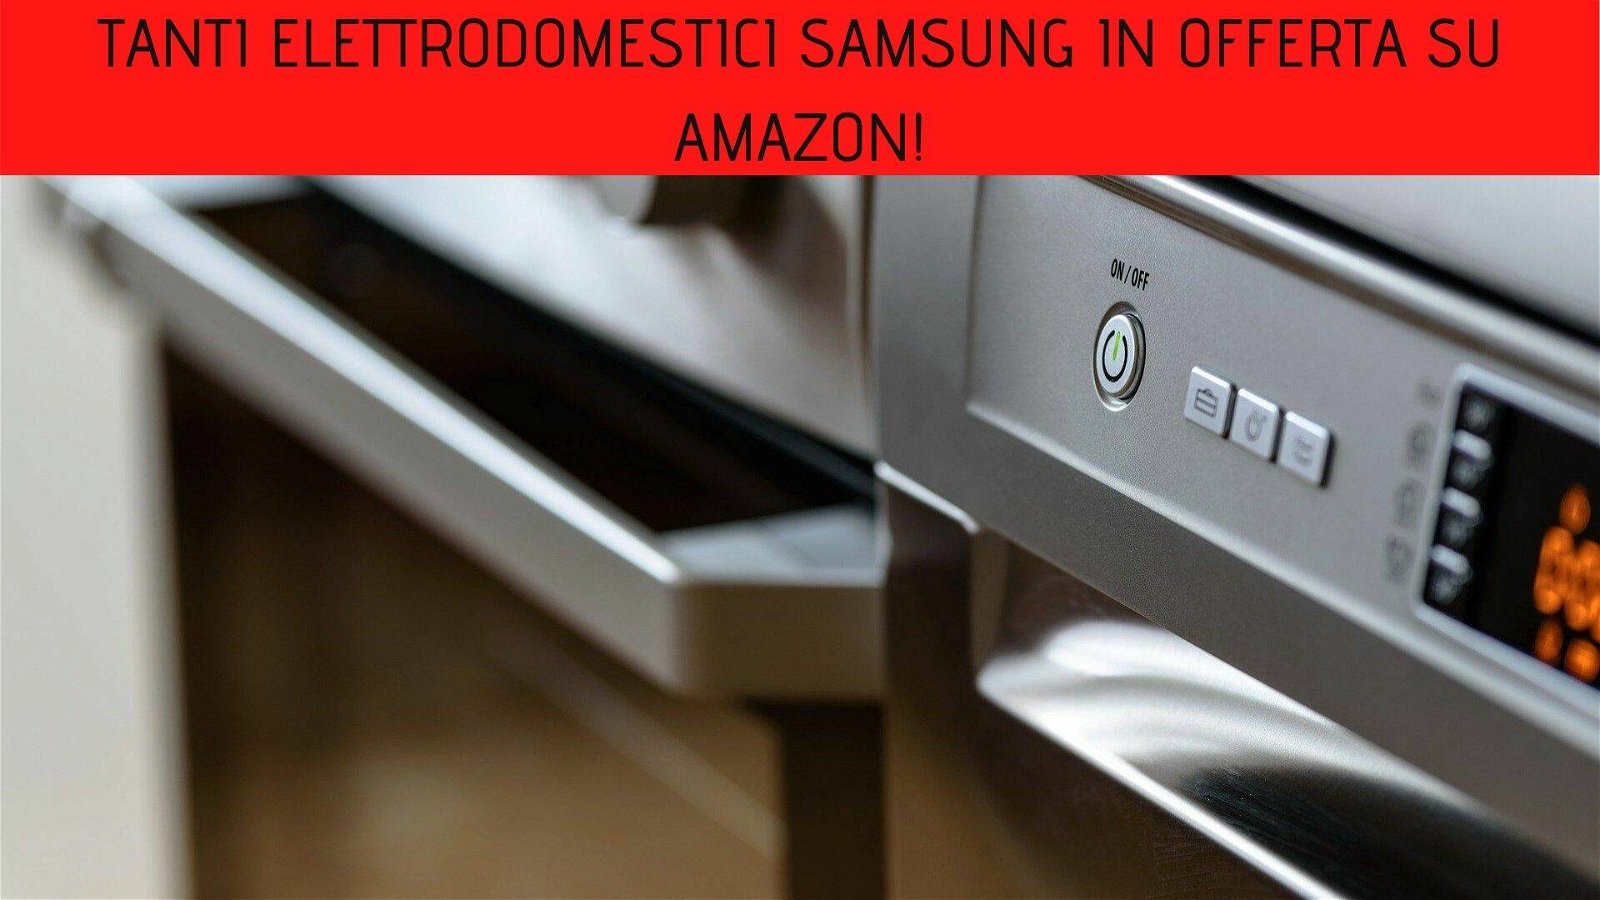 Immagine di Tanti elettrodomestici Samsung in offerta su Amazon!